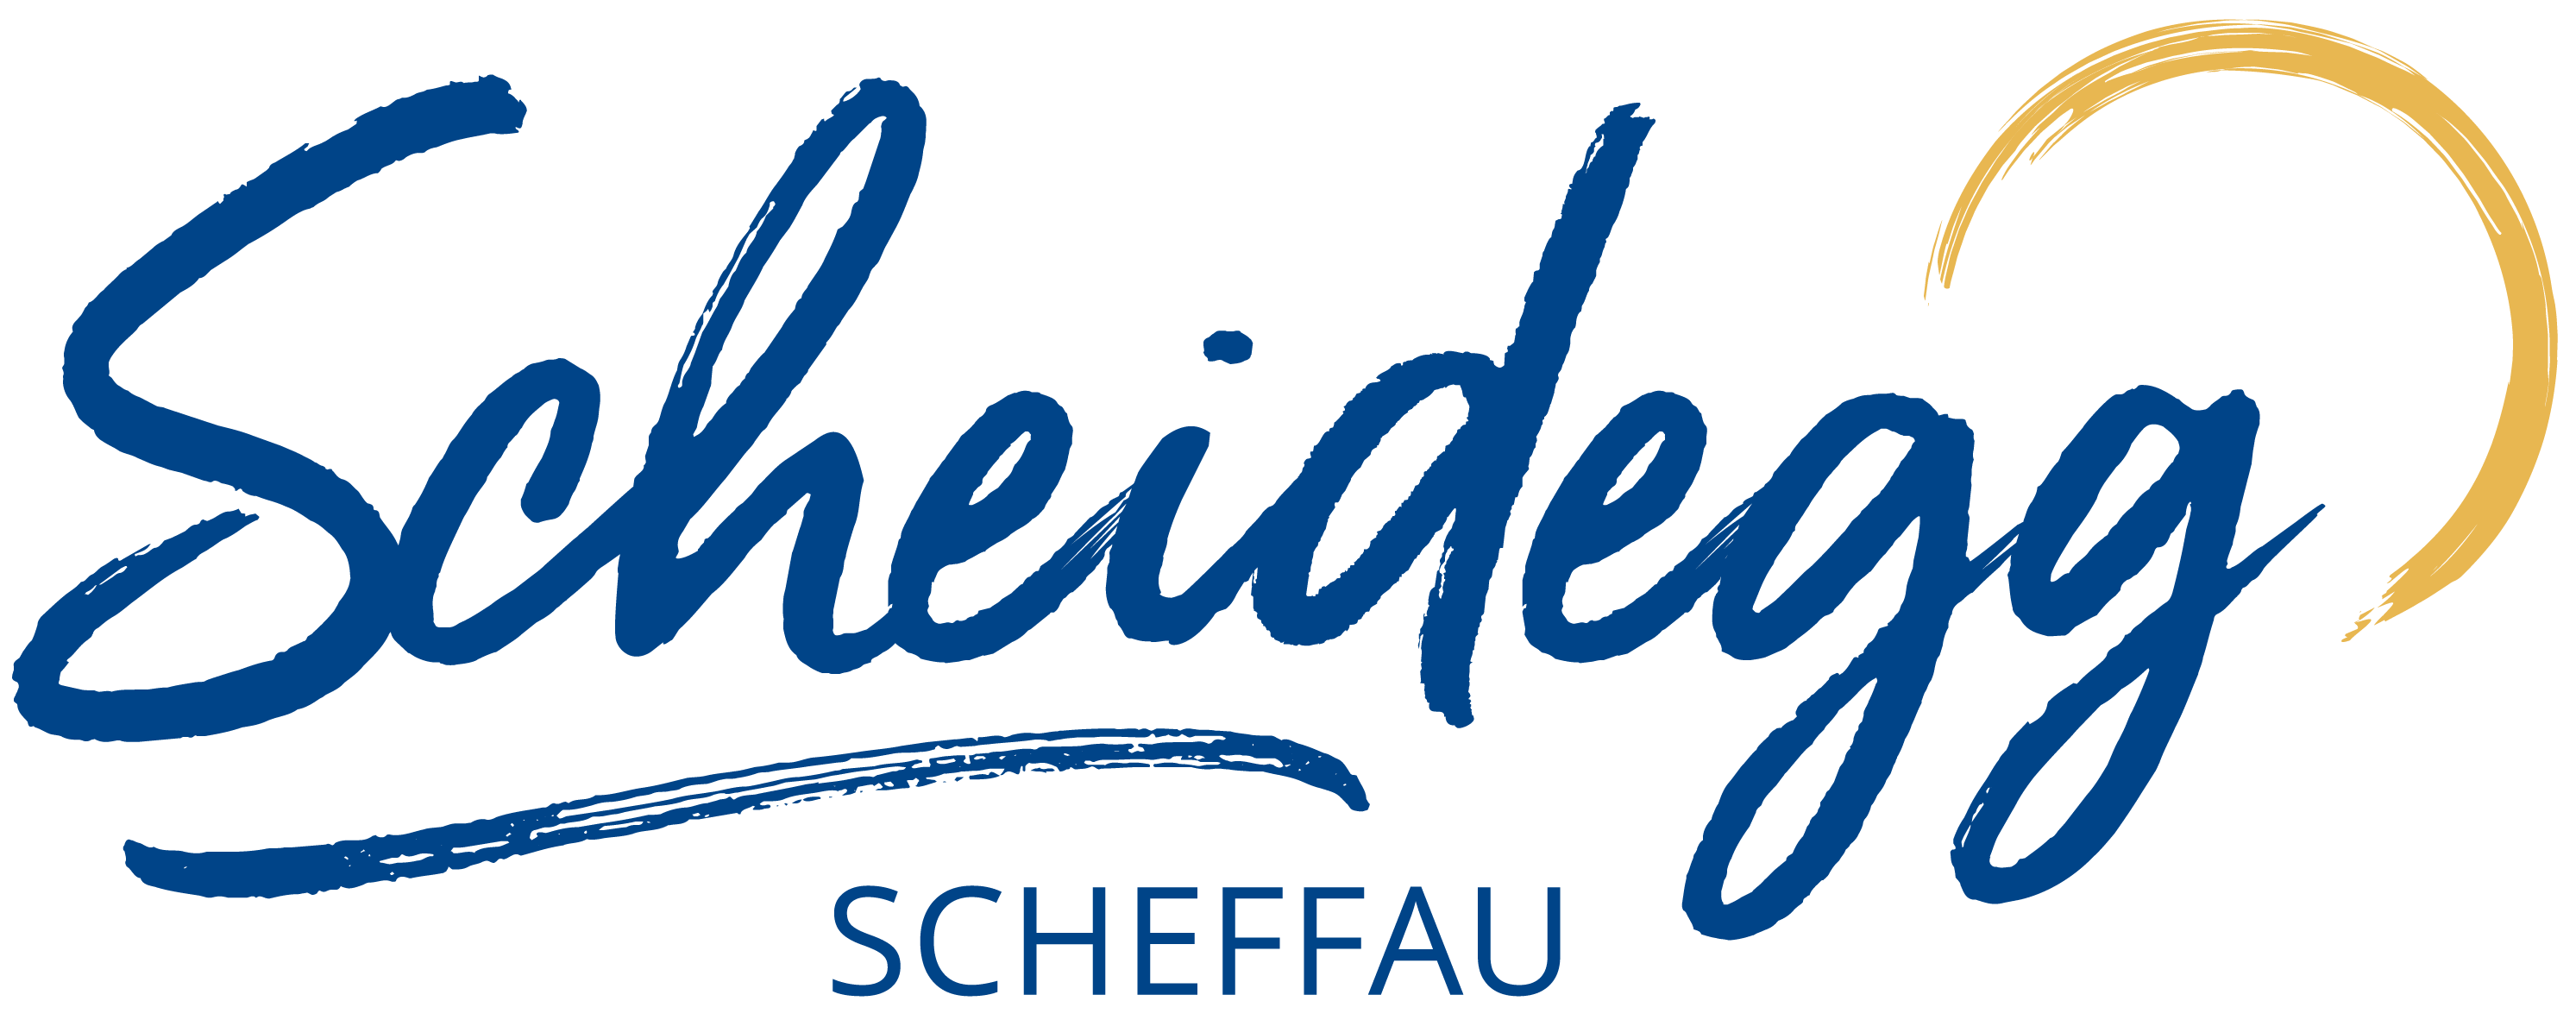 Logo Scheidegg Scheffau neu